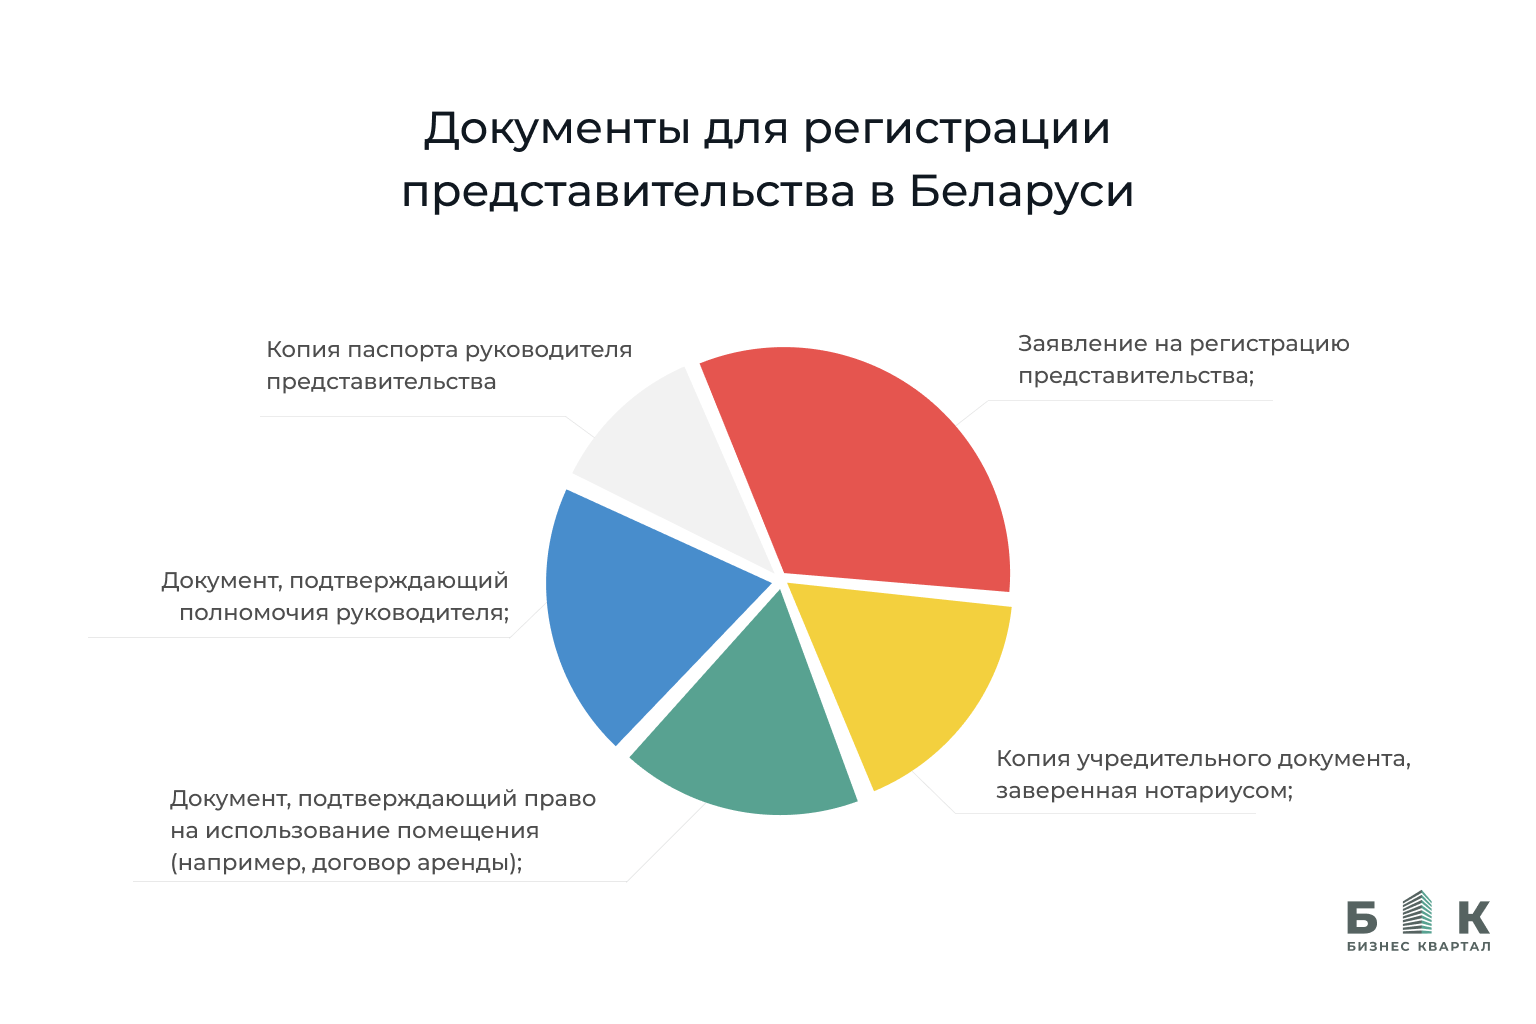 Документы для регистрации представительства в Беларуси